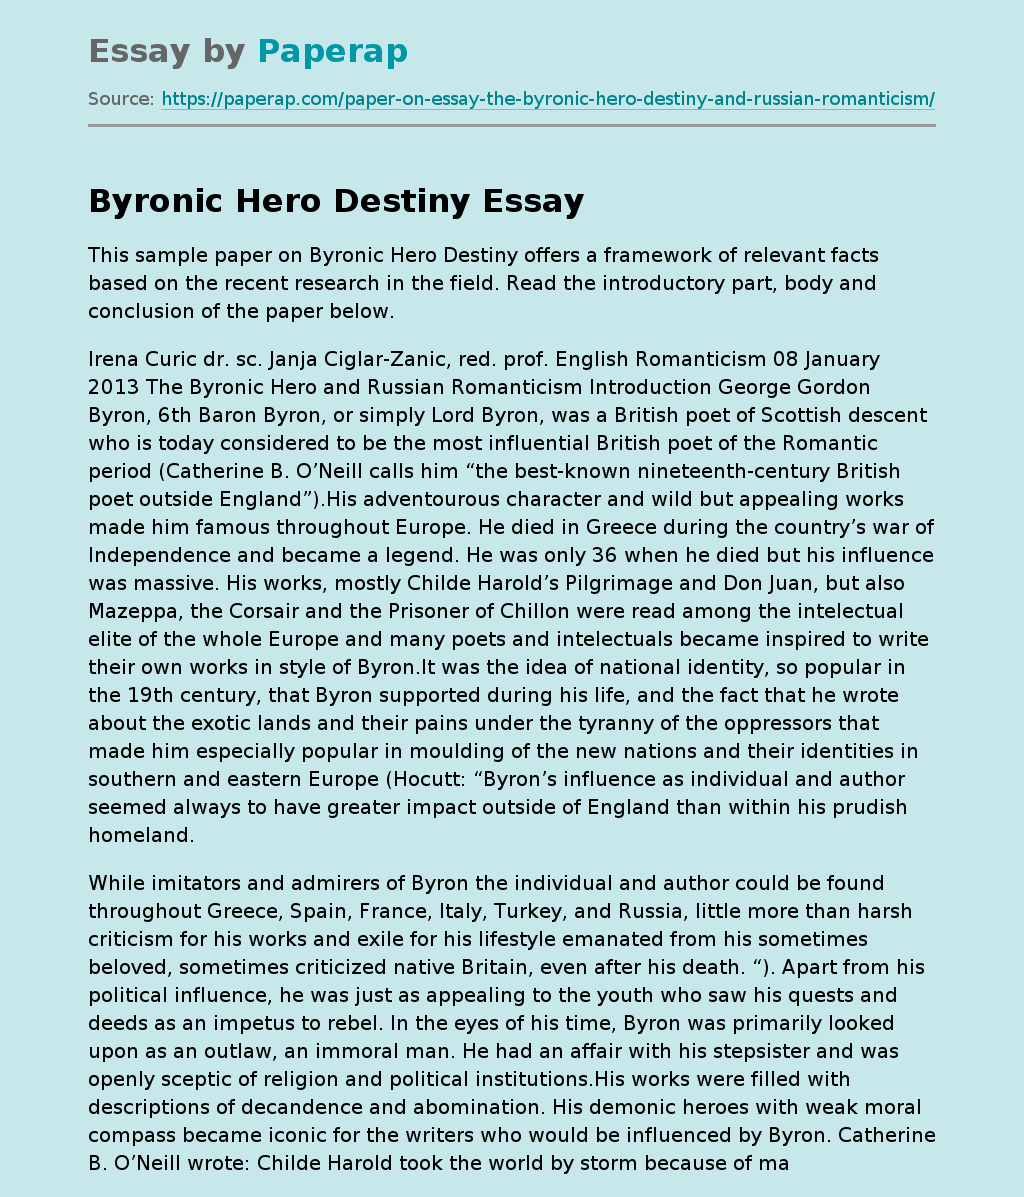 Byronic Hero Destiny